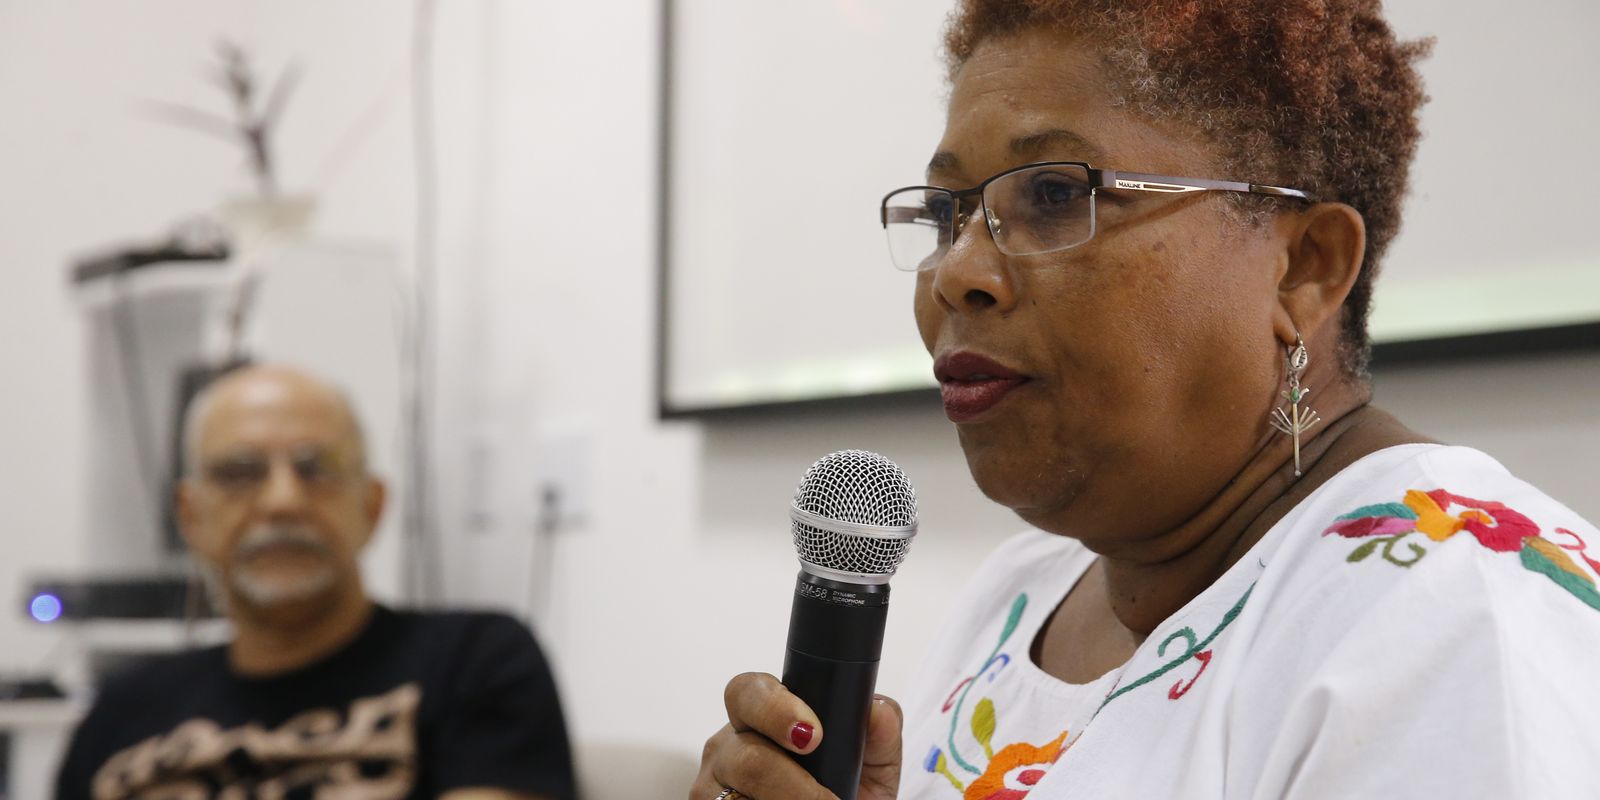 Mulheres negras defendem recorte racial no debate sobre cuidado – finanças brasil